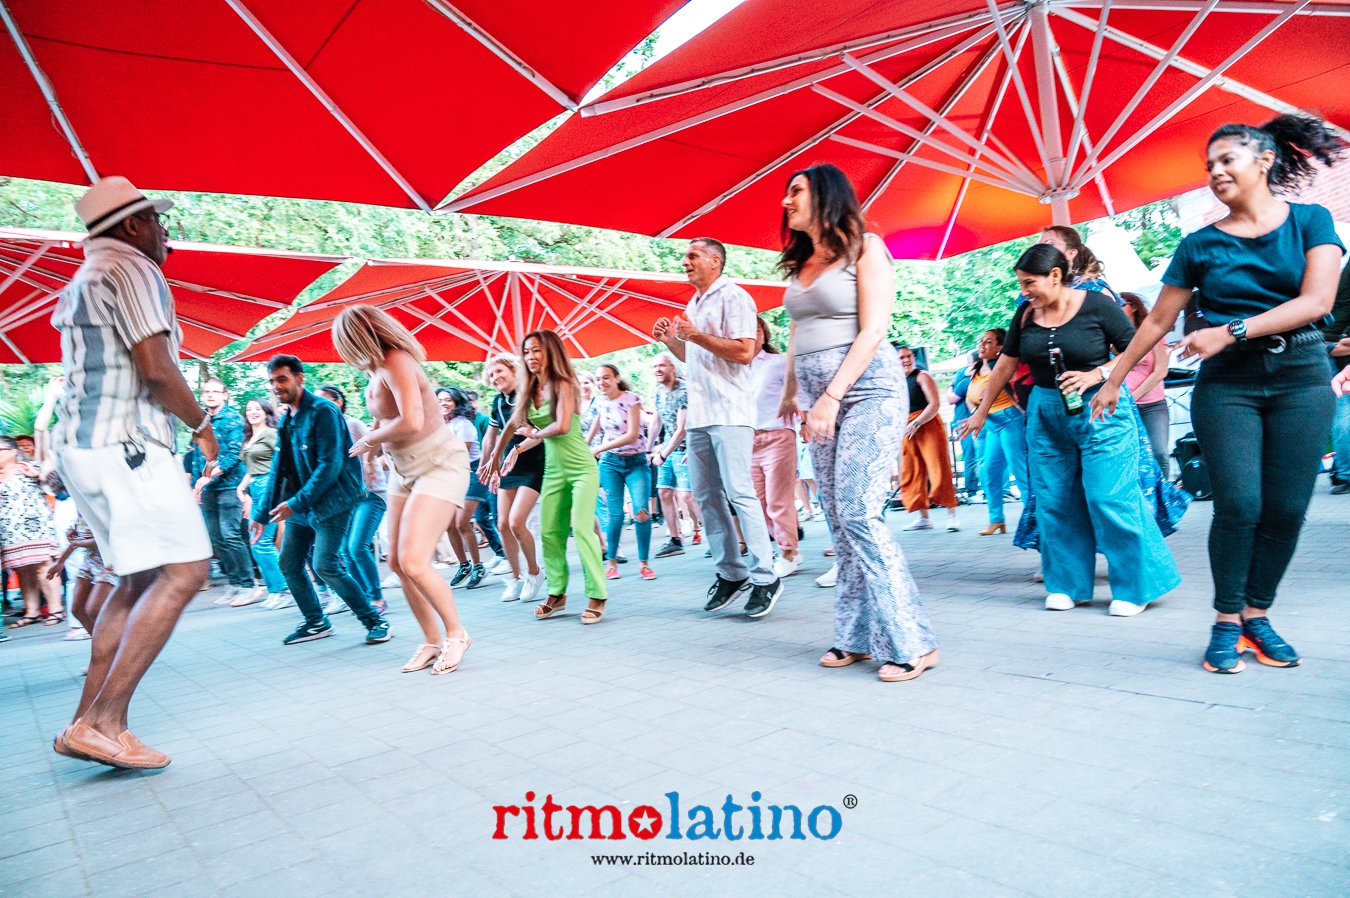 Ritmo Latino®  Barfüßer Biergarten im Glacis Park 2023